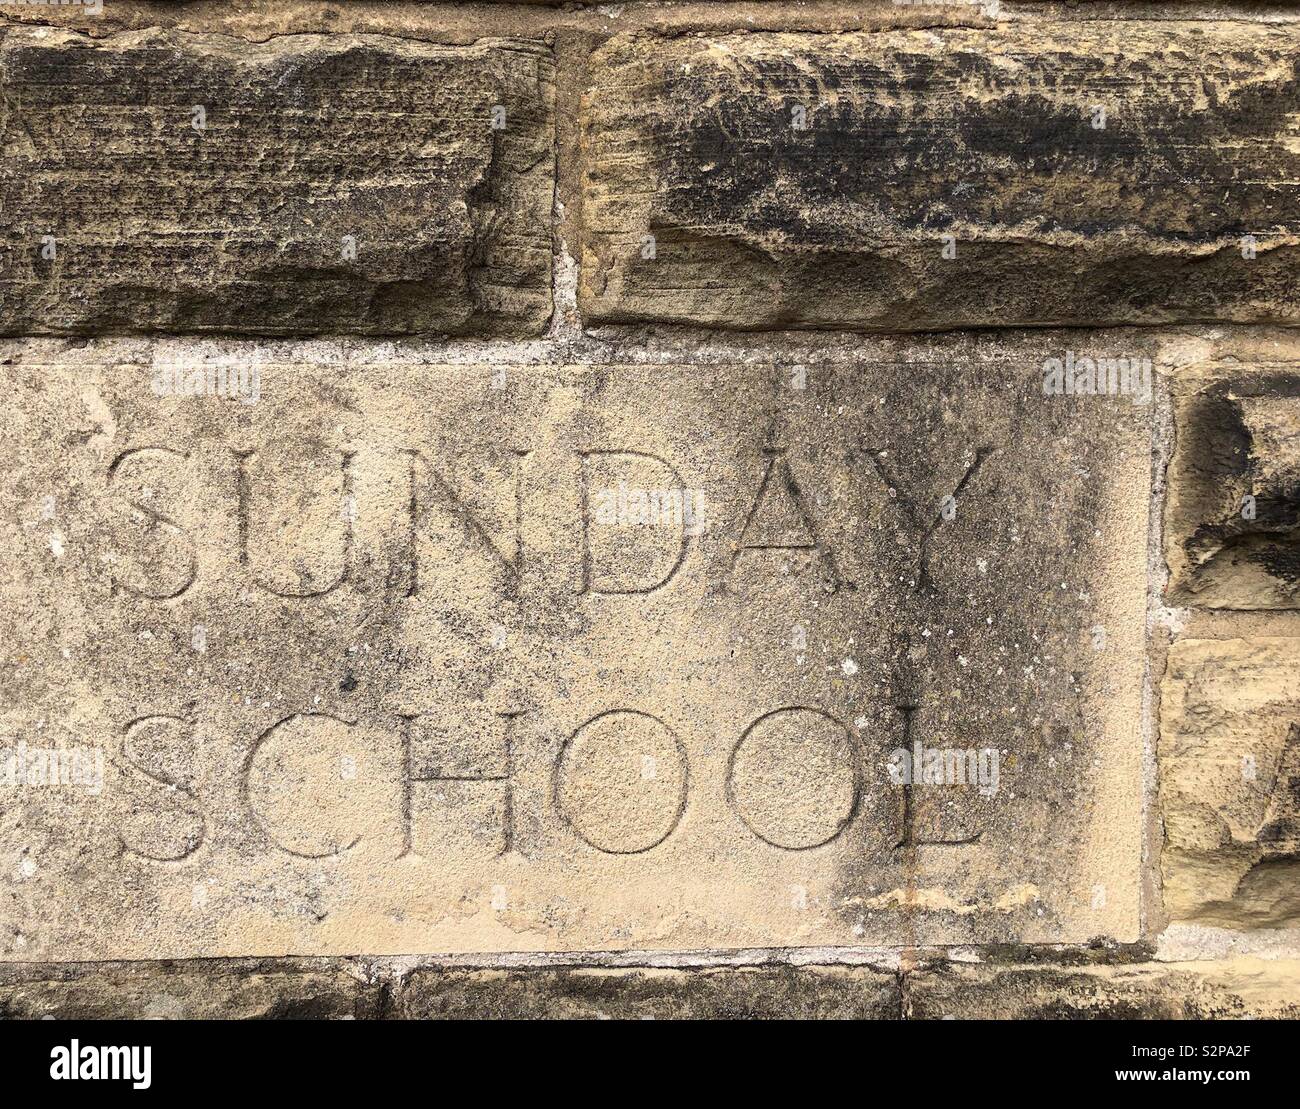 Pierres sculptées encastrées dans le mur d'une église méthodiste - l'école du dimanche Banque D'Images